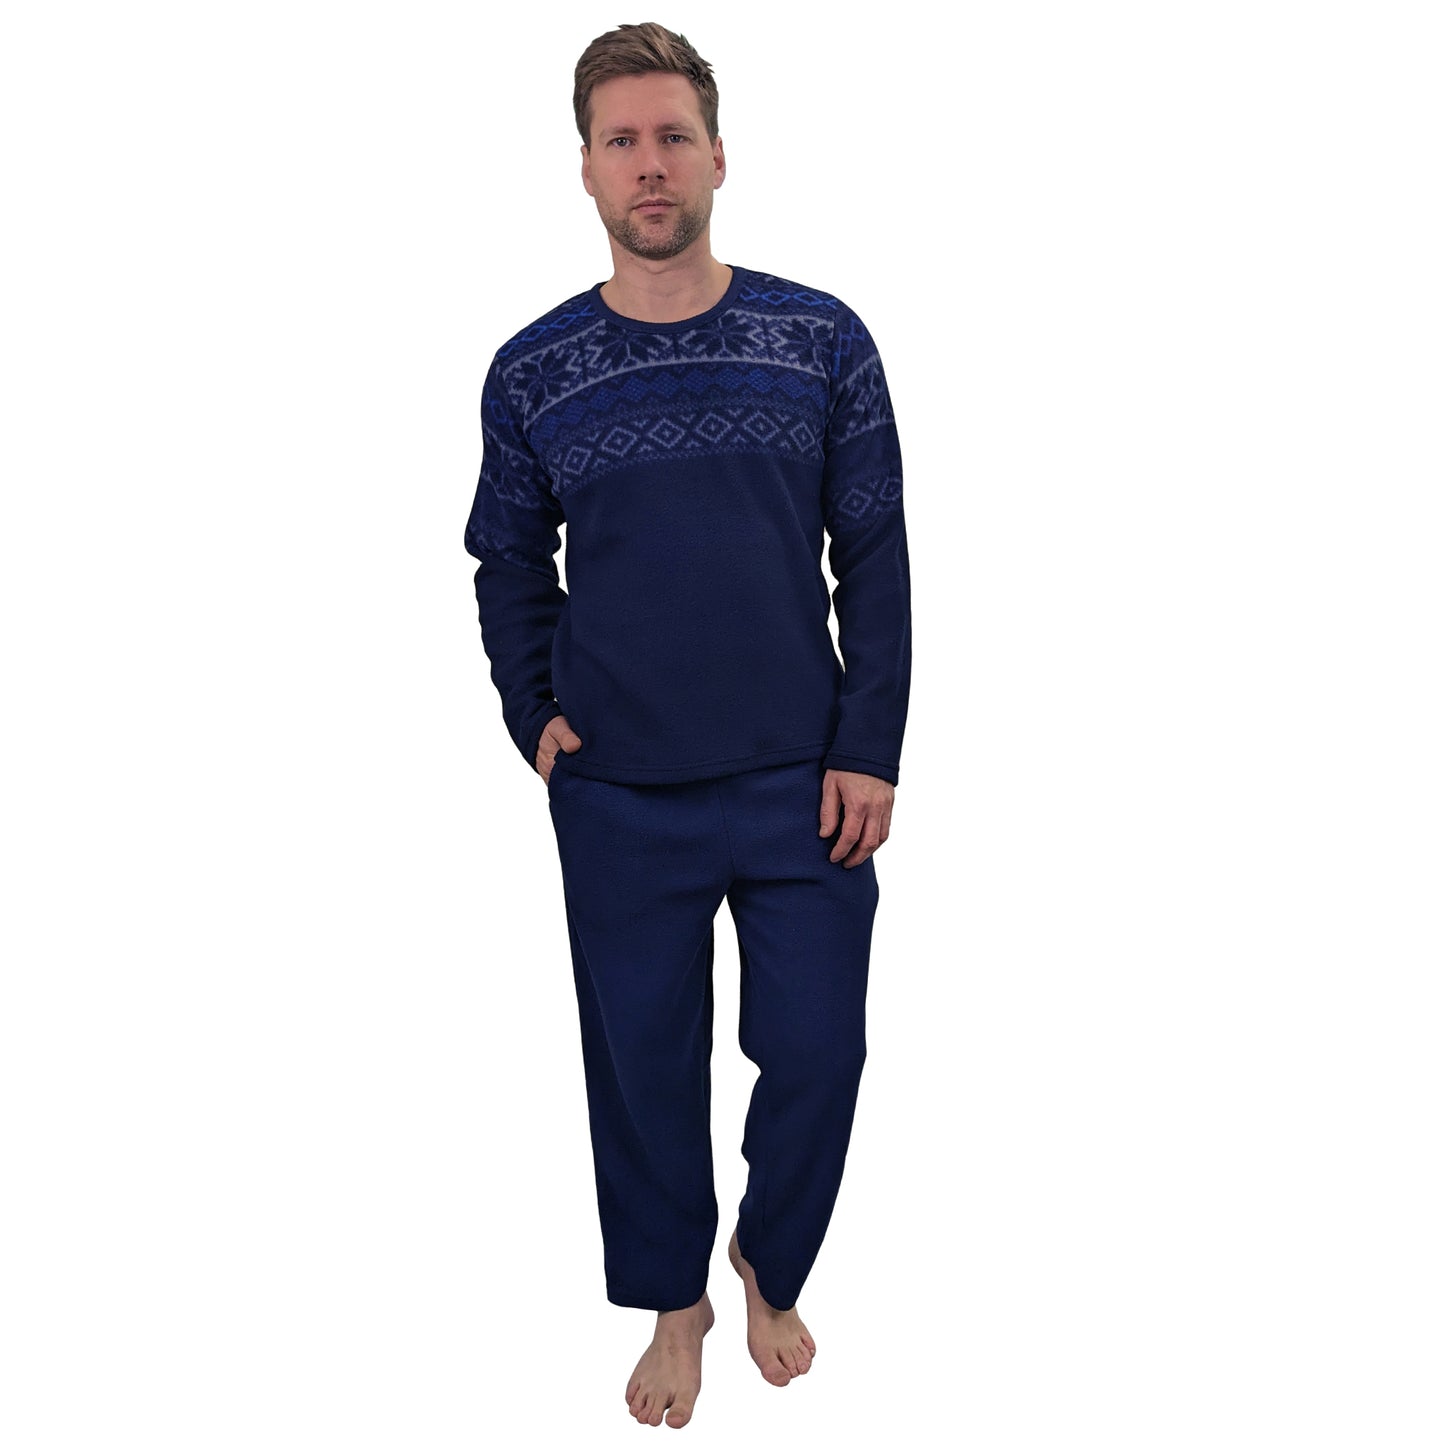 Bylur Fleece PJ/Loungewear Set Navy Sleepwear & Loungewear ASASonline